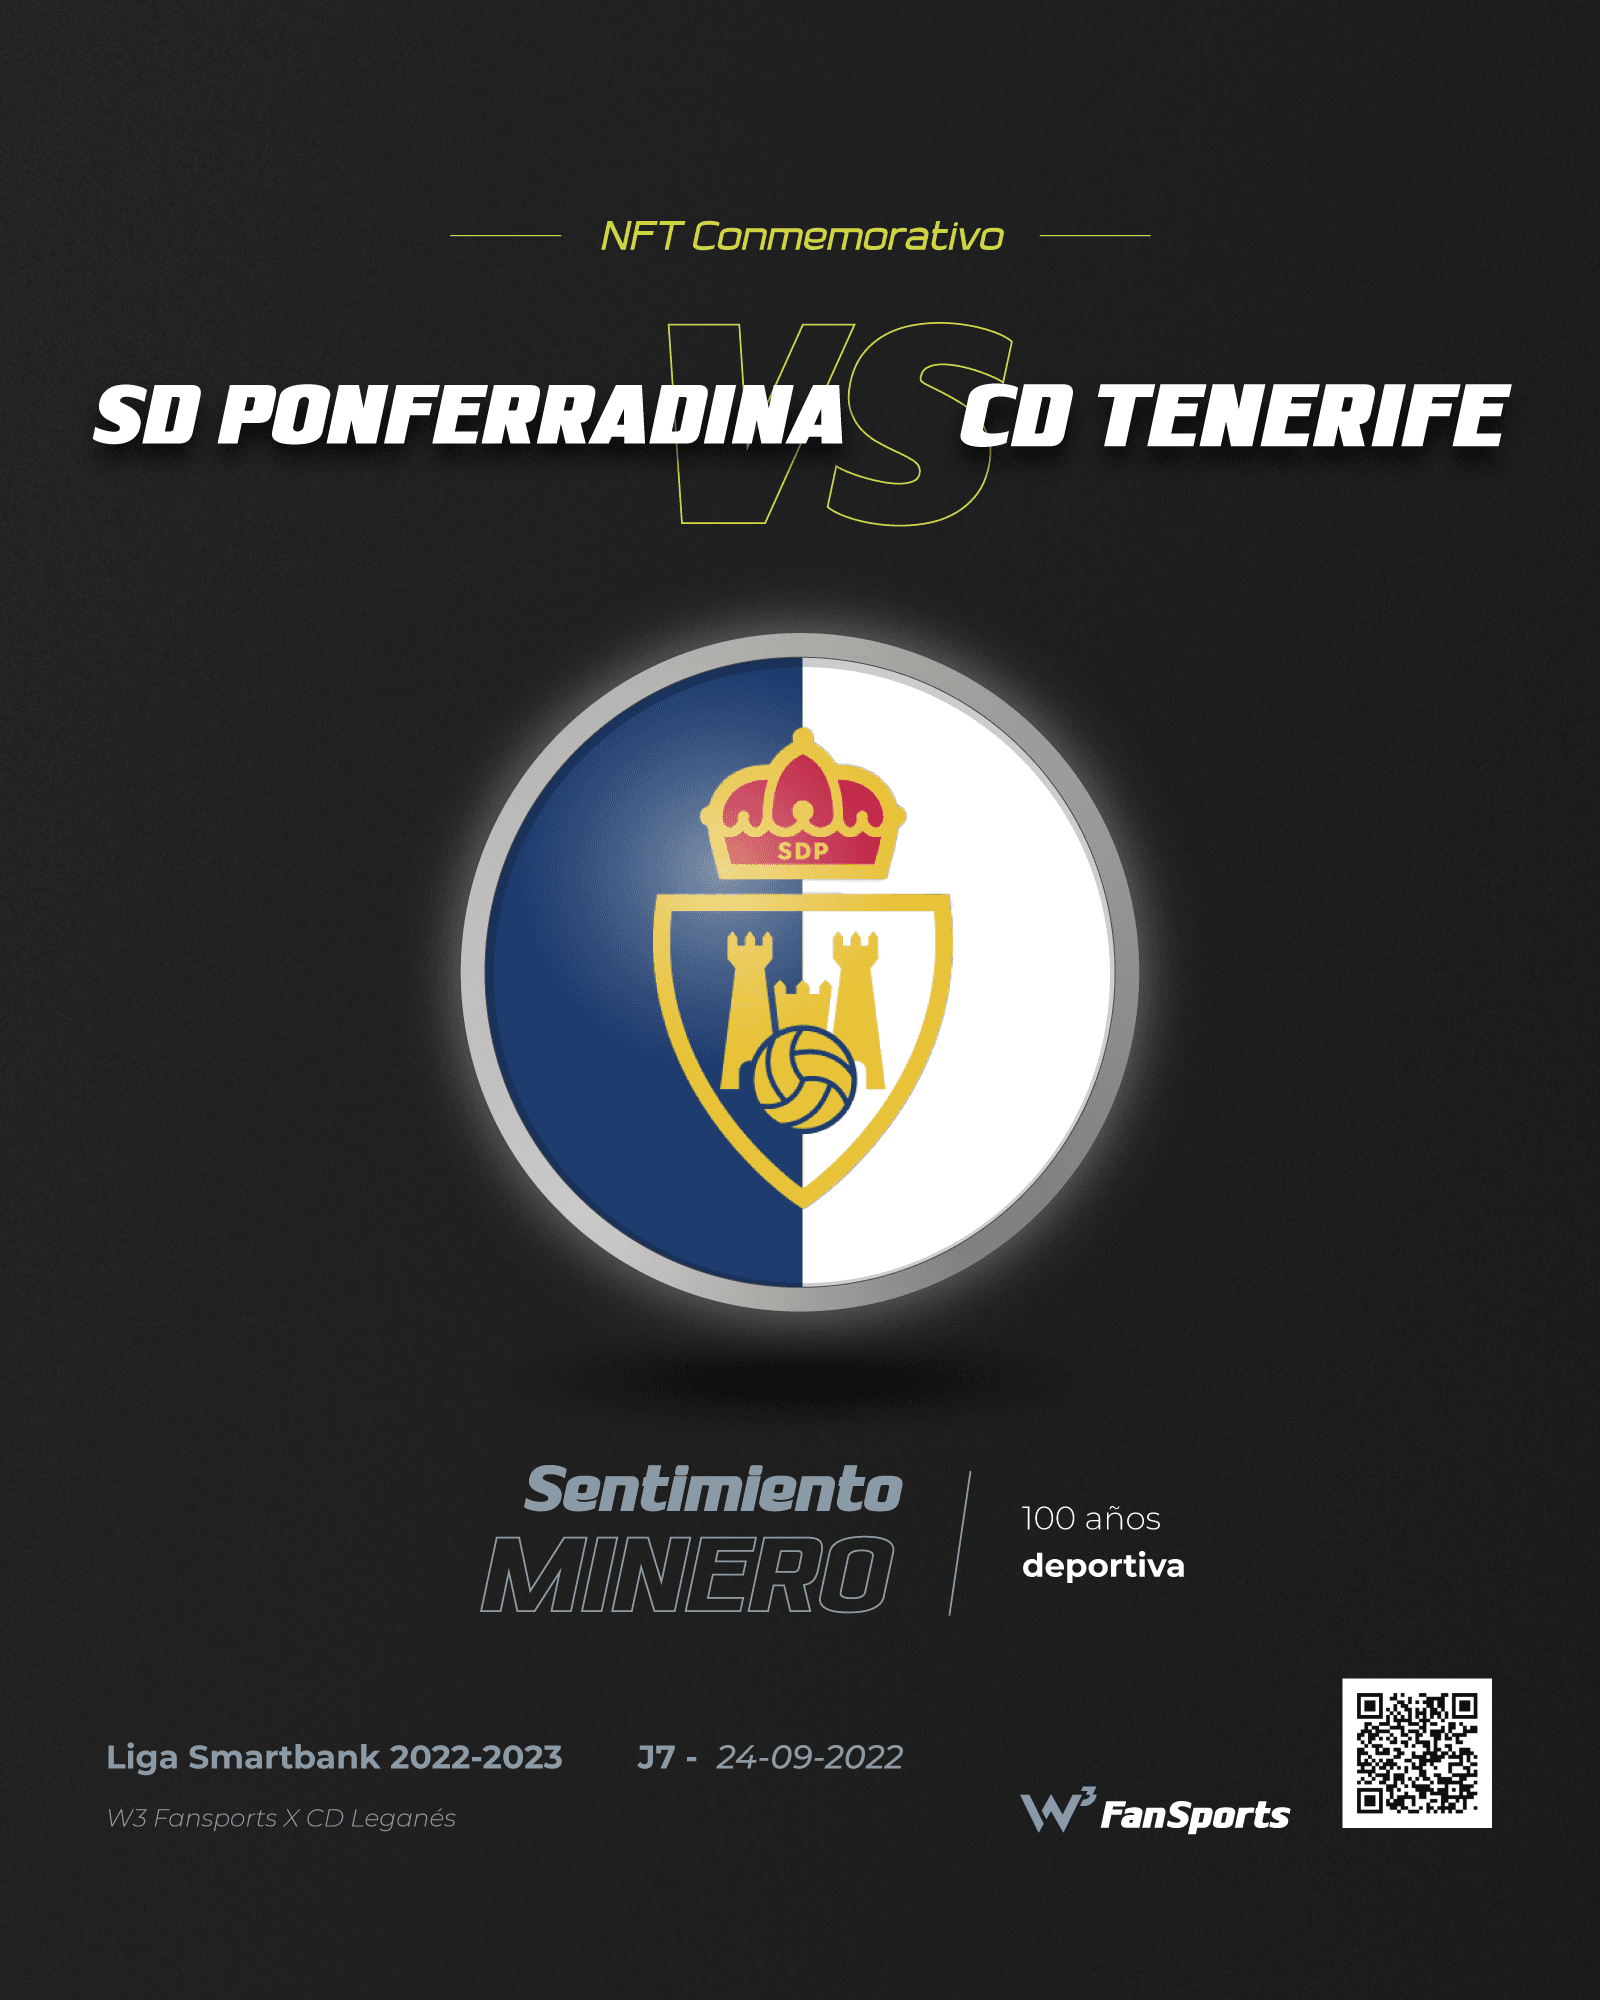 SD Ponferradina vs CD Tenerife J7 24/09/2022 - Conmemorativo